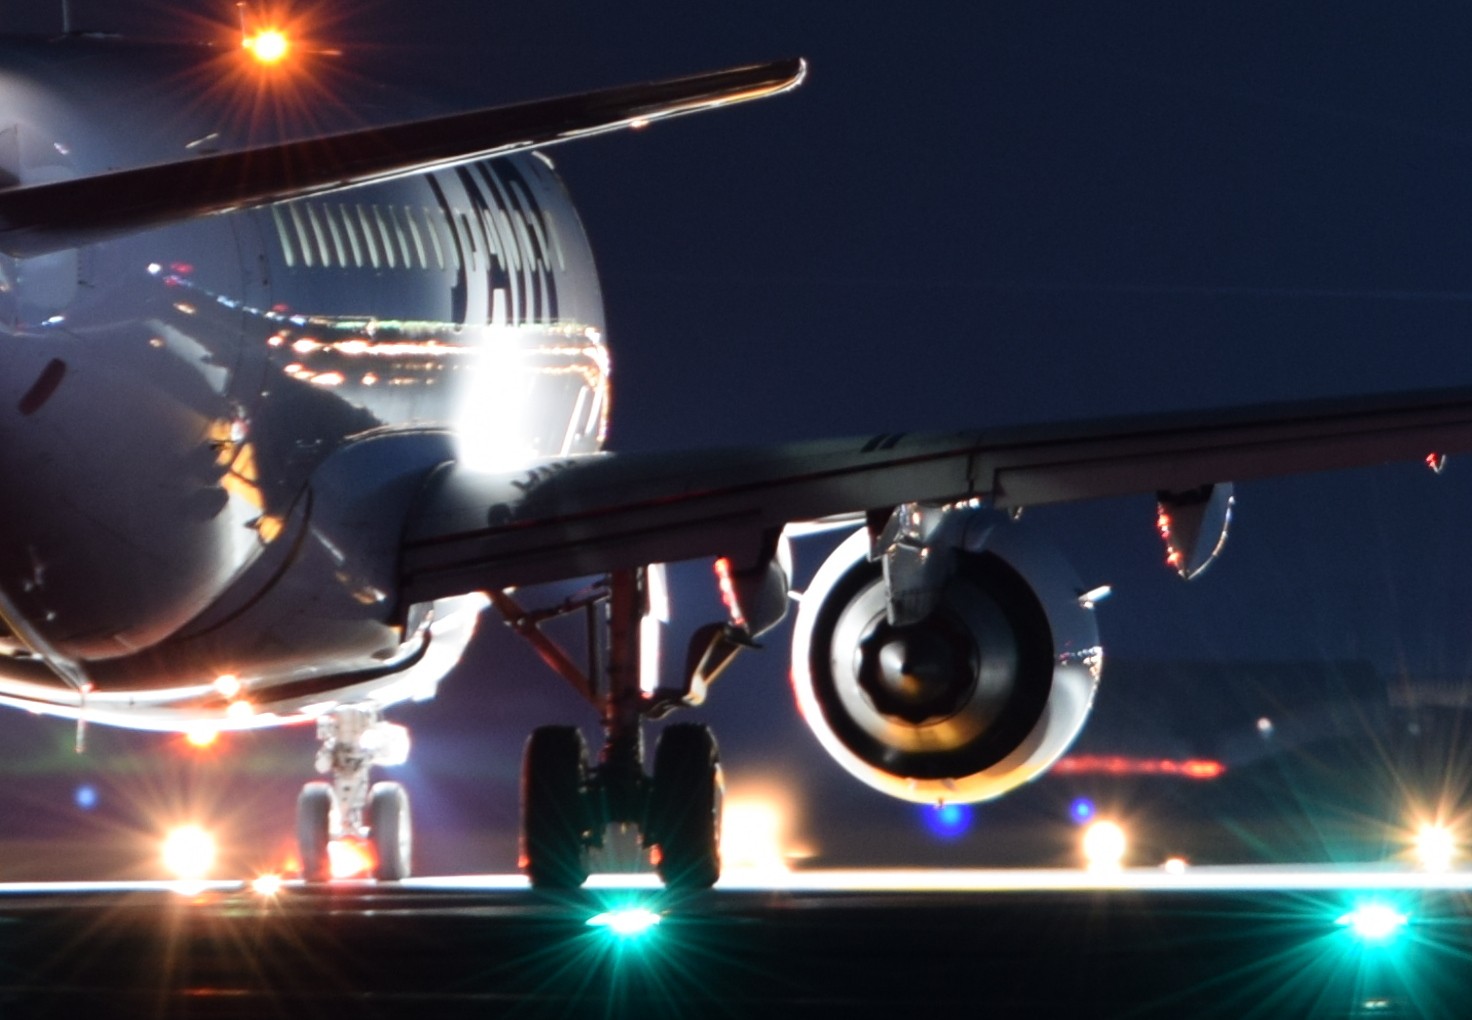 7u4 A4サイズ 空港での飛行機写真 夜景 オシャレなポスター